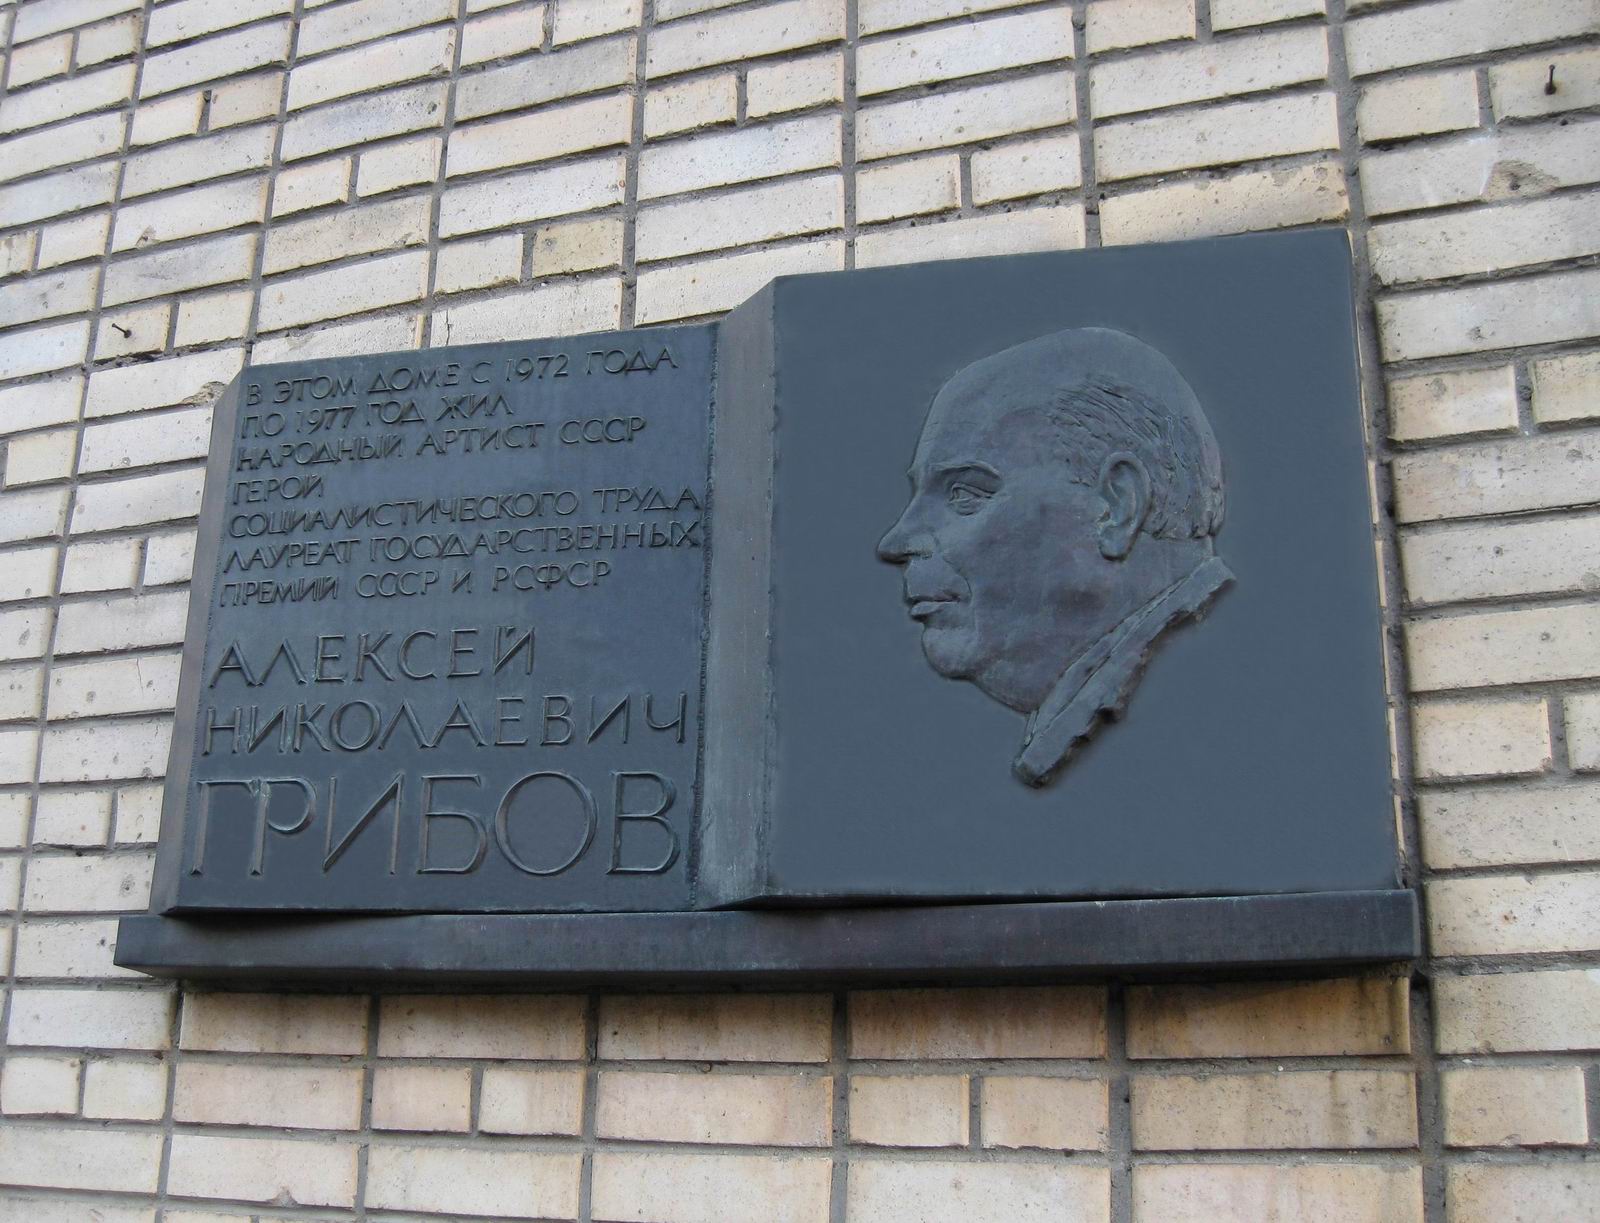 Мемориальная доска Грибовe А.Н. (1902–1977), ск. Ю.В.Александров, арх. Ю.В.Ранинский, в Малом Власьевском переулке, дом 3, открыта 15.2.1980.